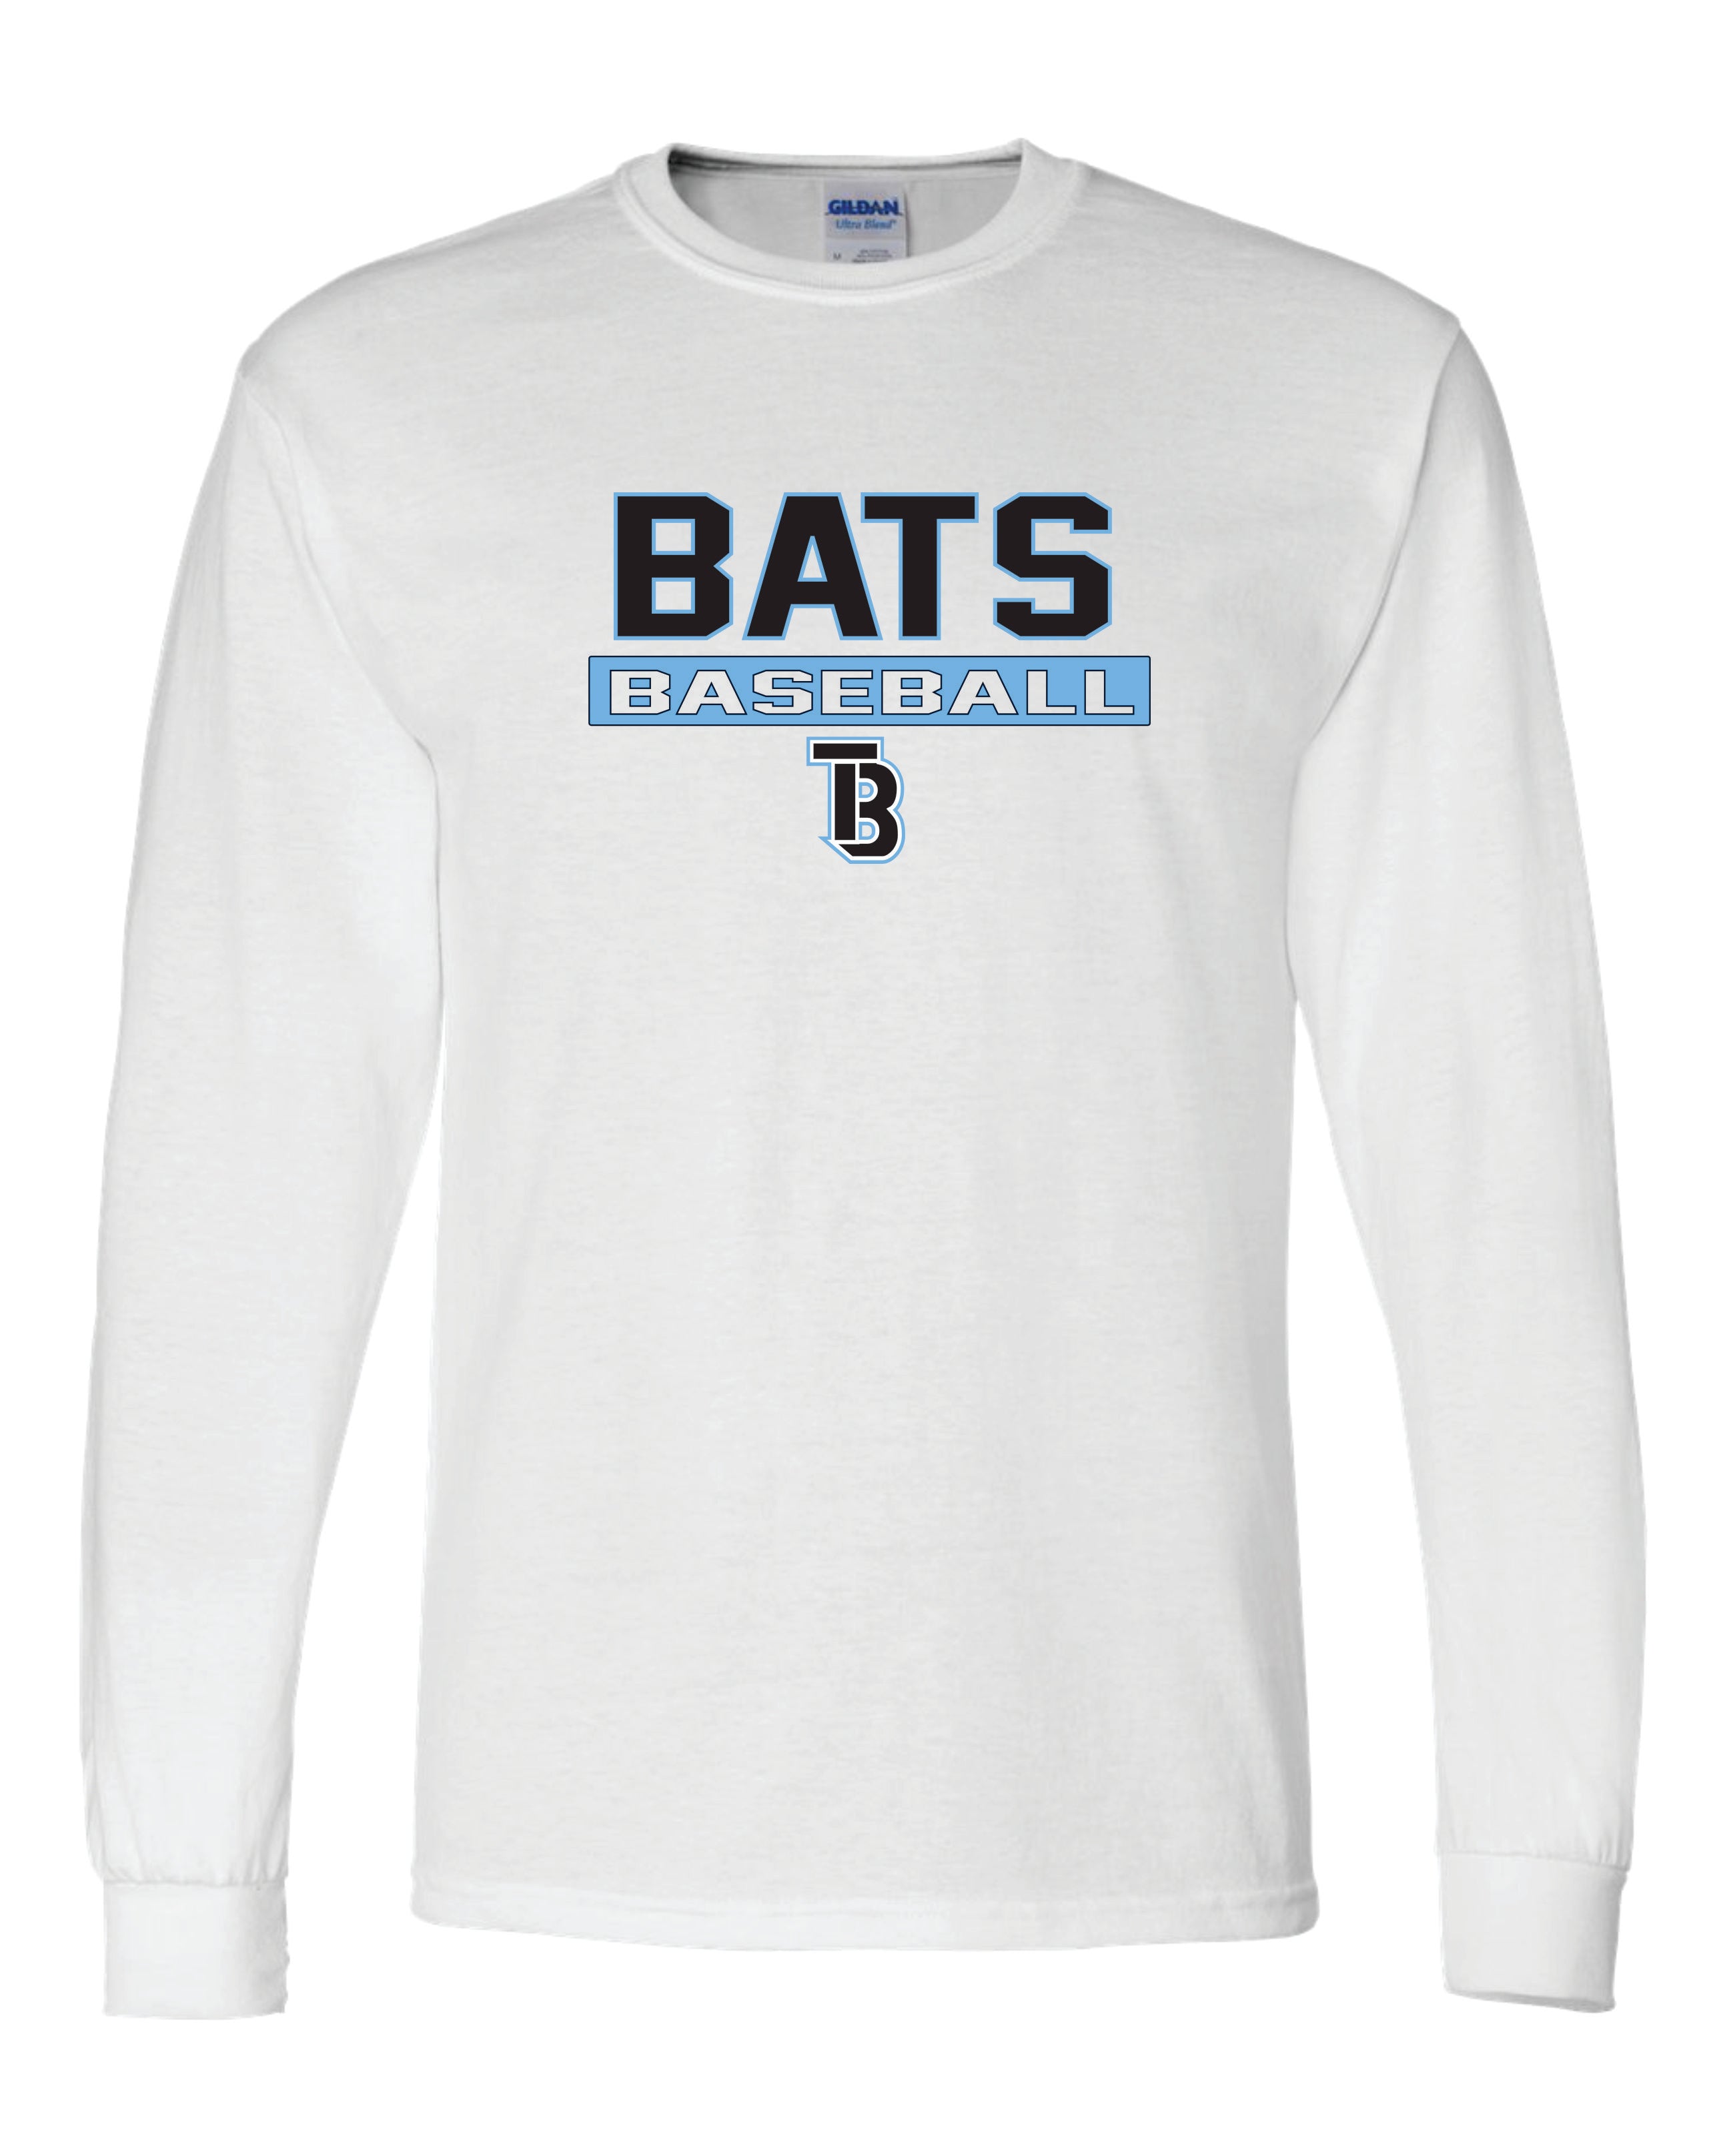 Tampa Bay Bats 50/50 Long Sleeve T-Shirts YOUTH